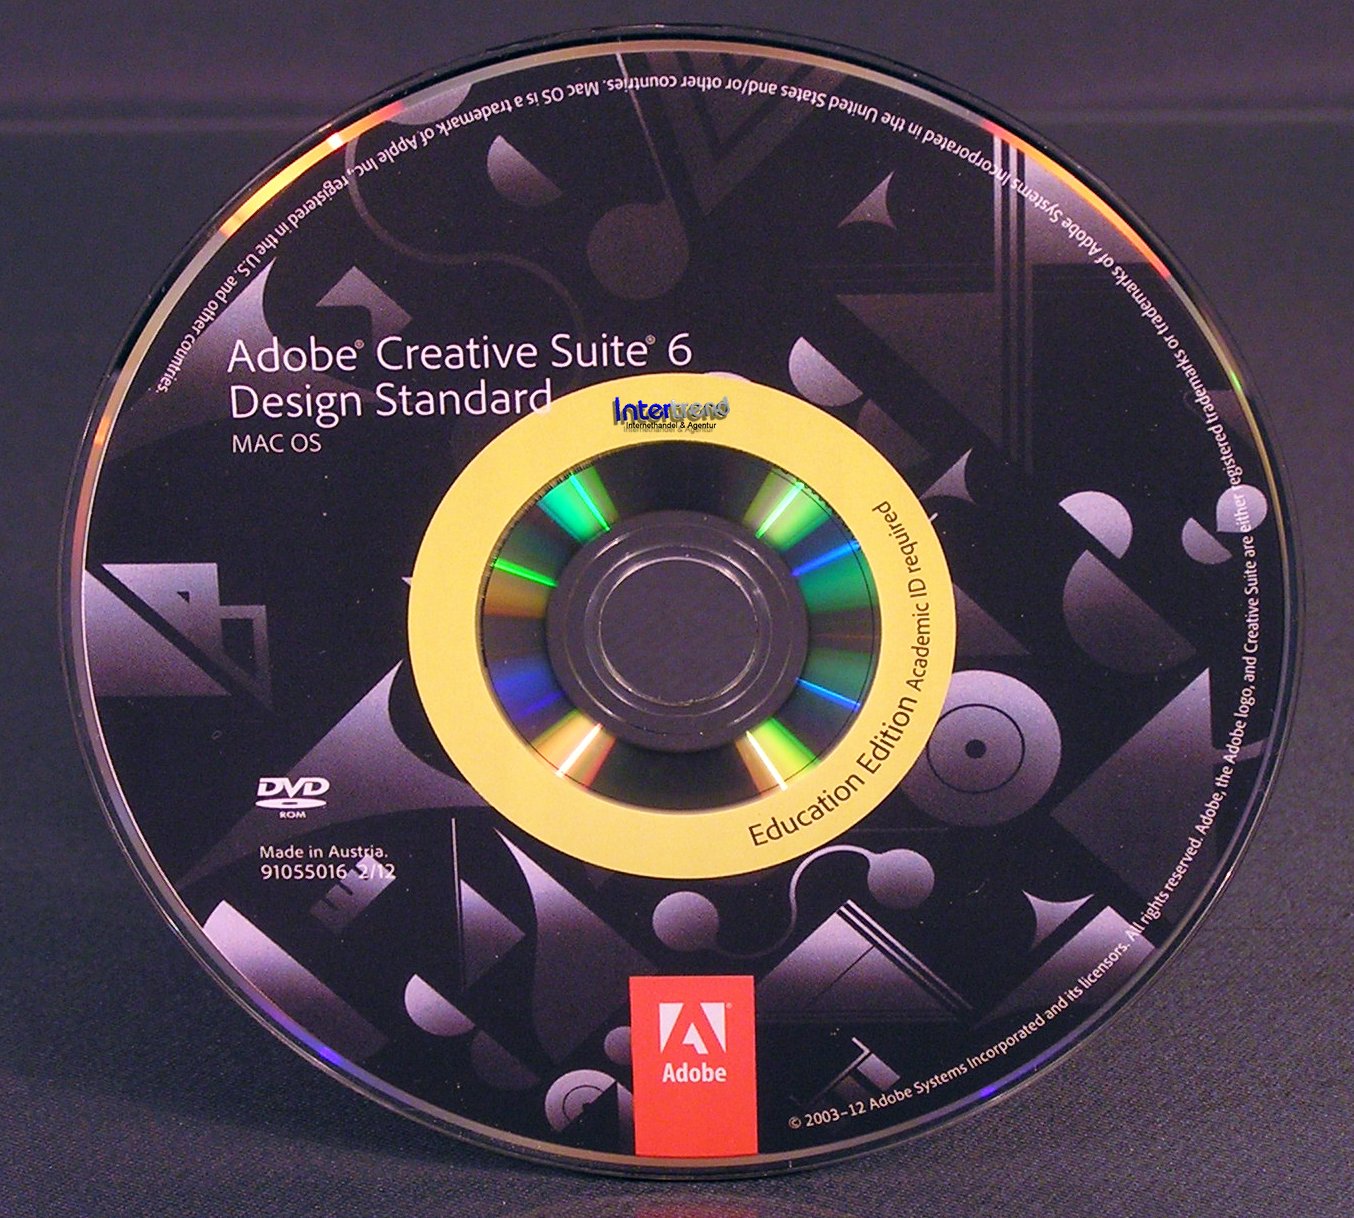 Creative adobe com. Adobe Creative. Creative Suite. Adobe Creative Suite 6. Adobe Creative Adobe.